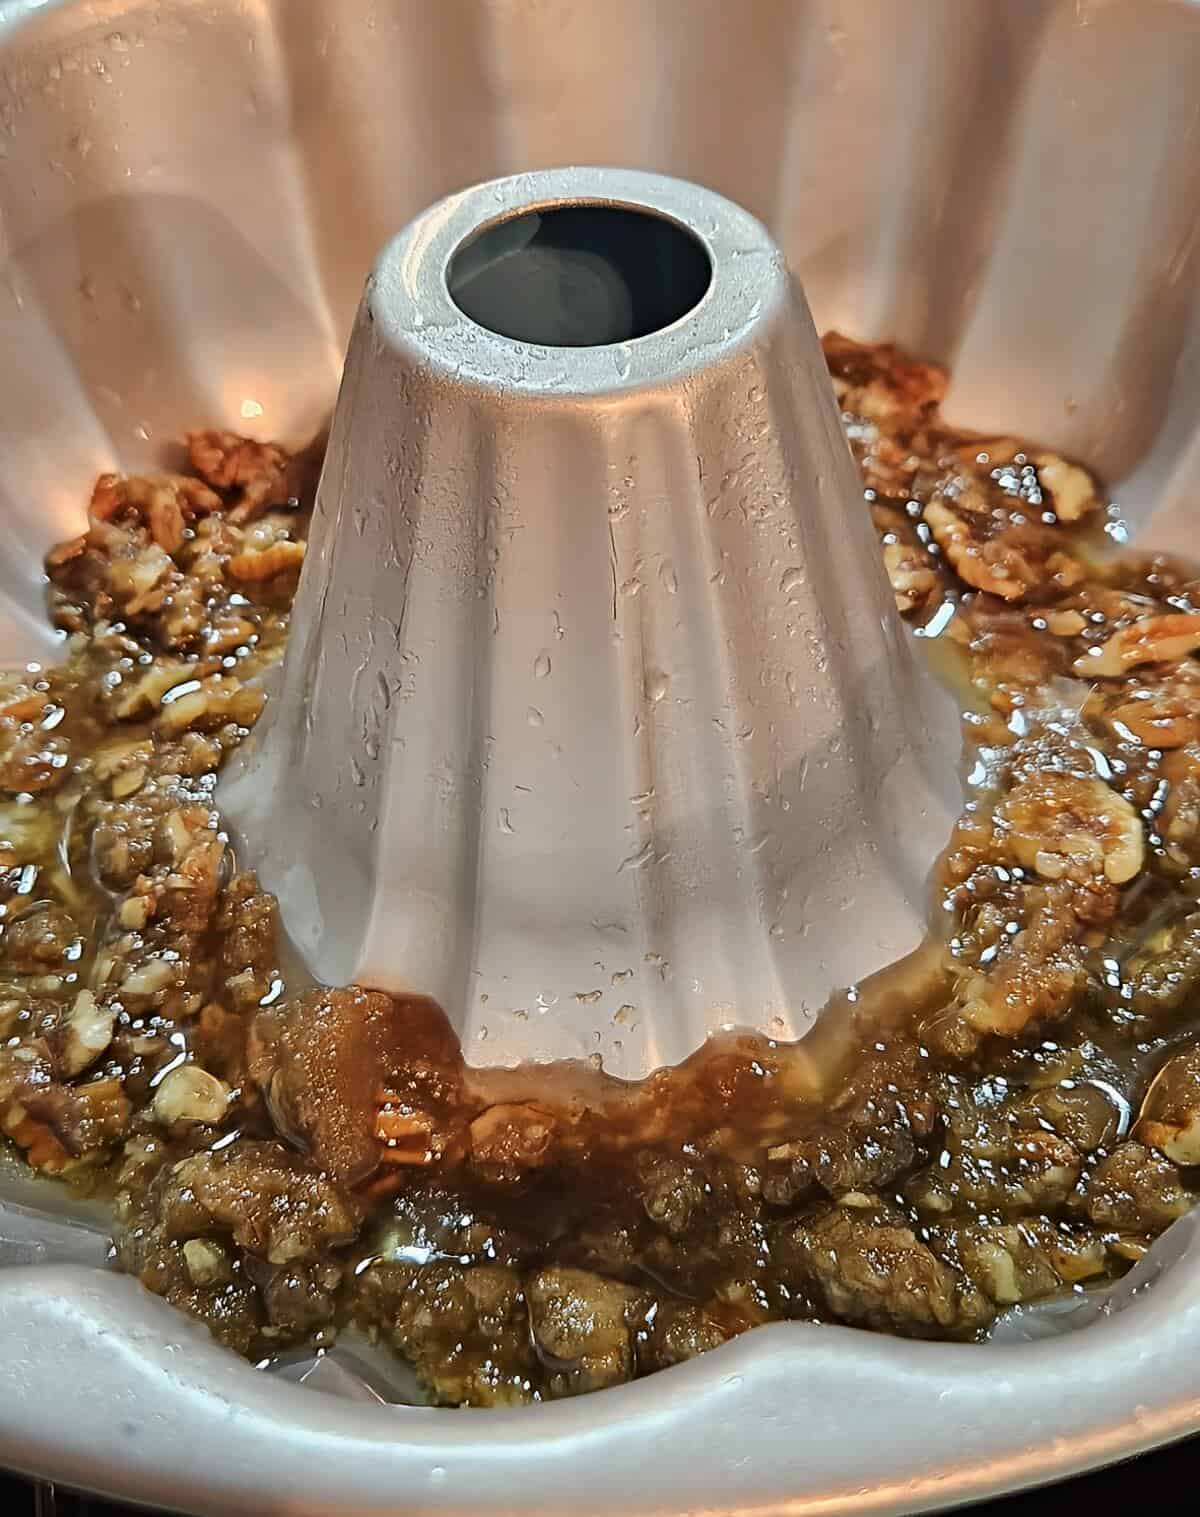 pecan praline mixture coating the bottom of a bundt pan